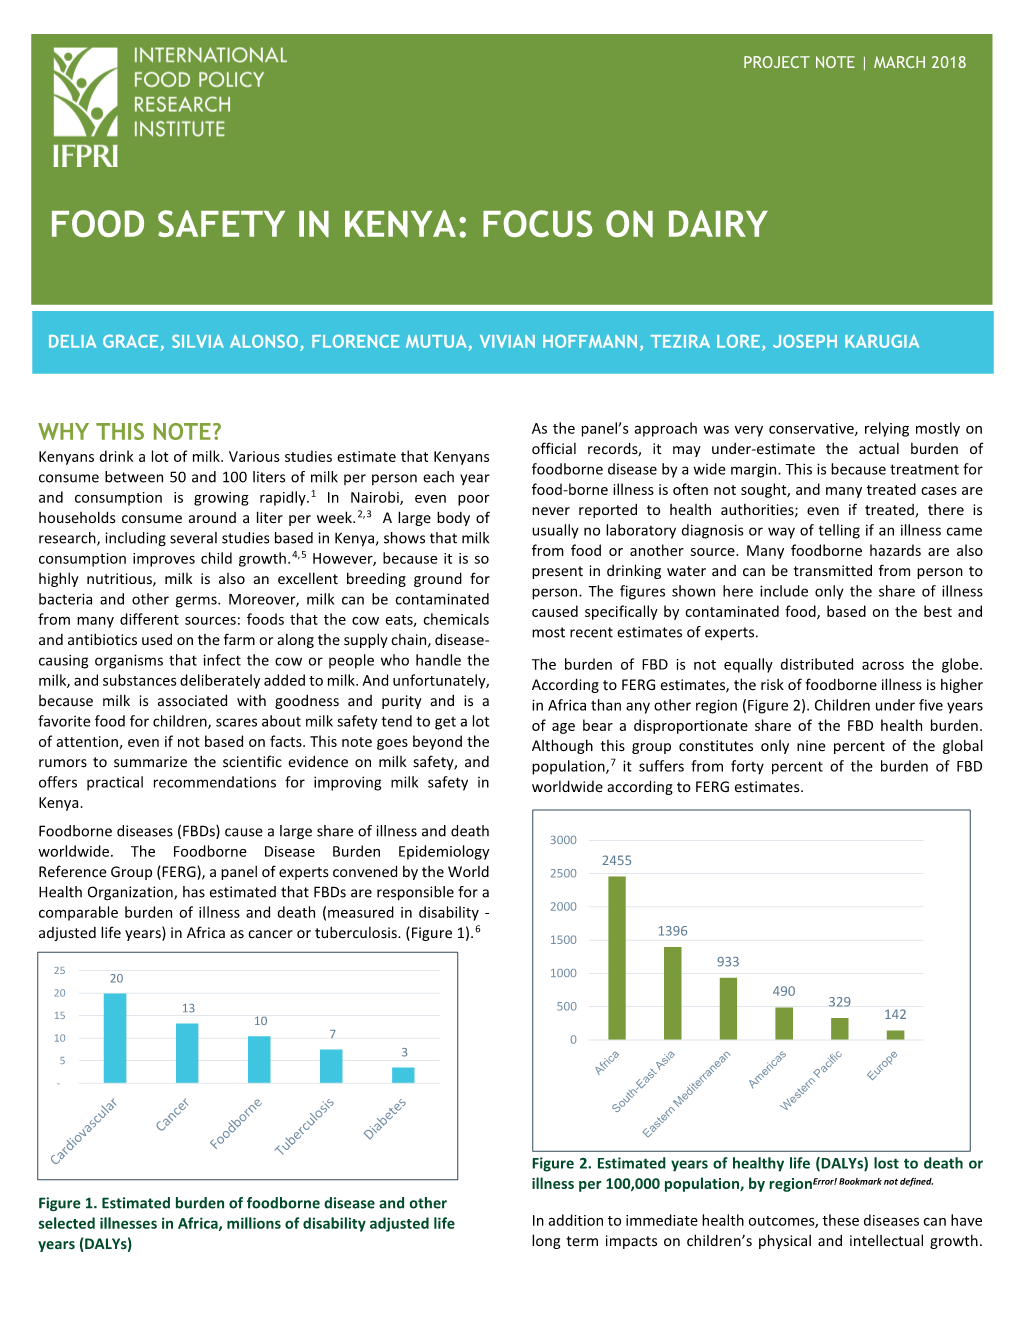 Food Safety in Kenya: Focus on Dairy